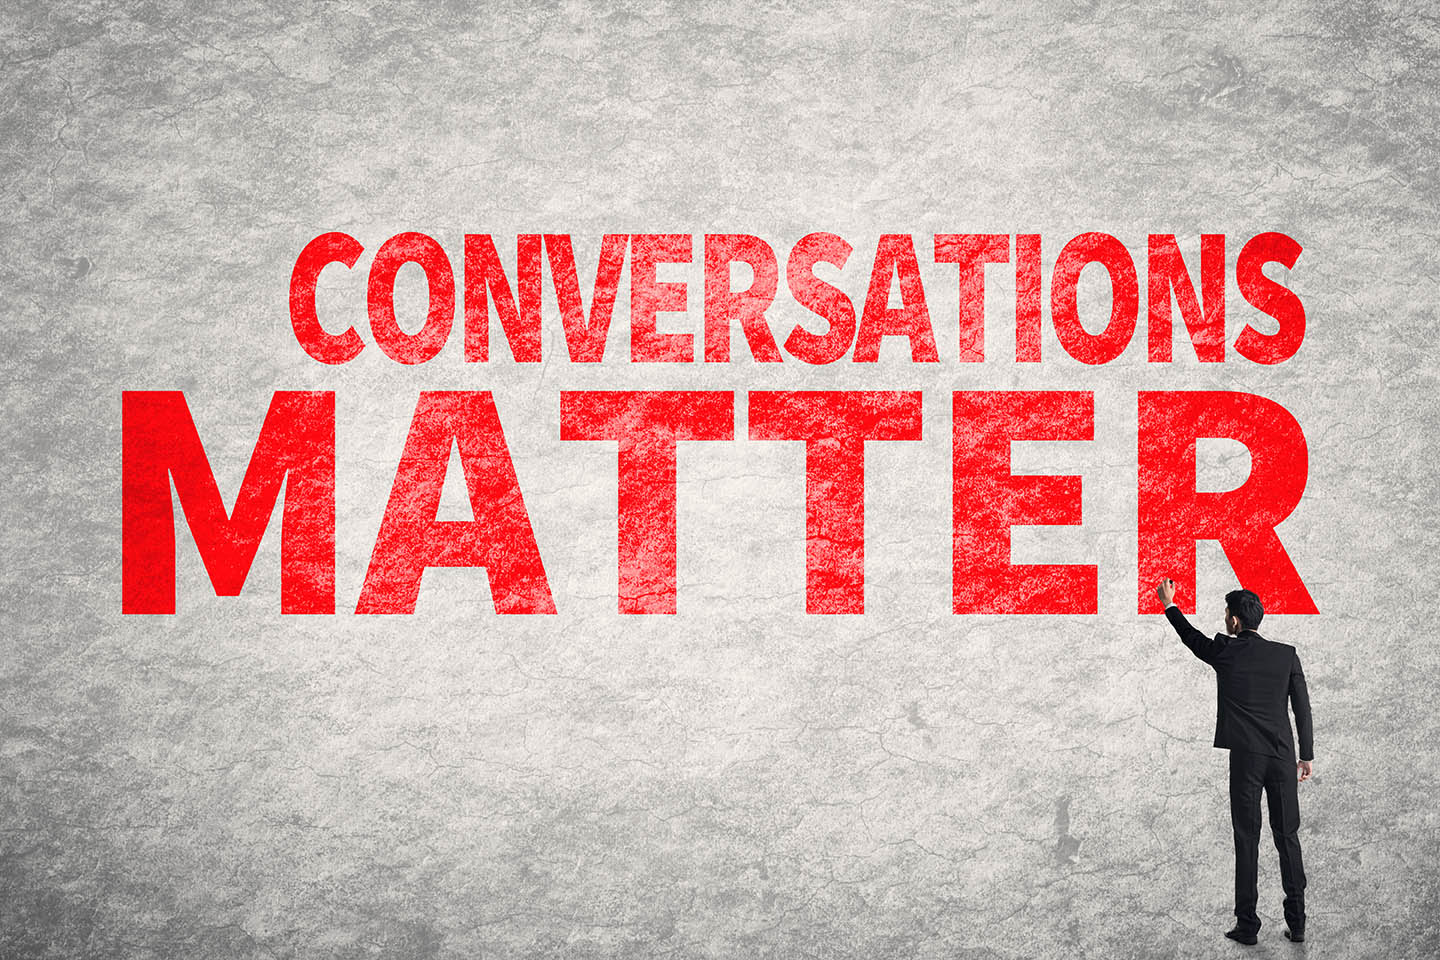 Conversations Matter customer relations